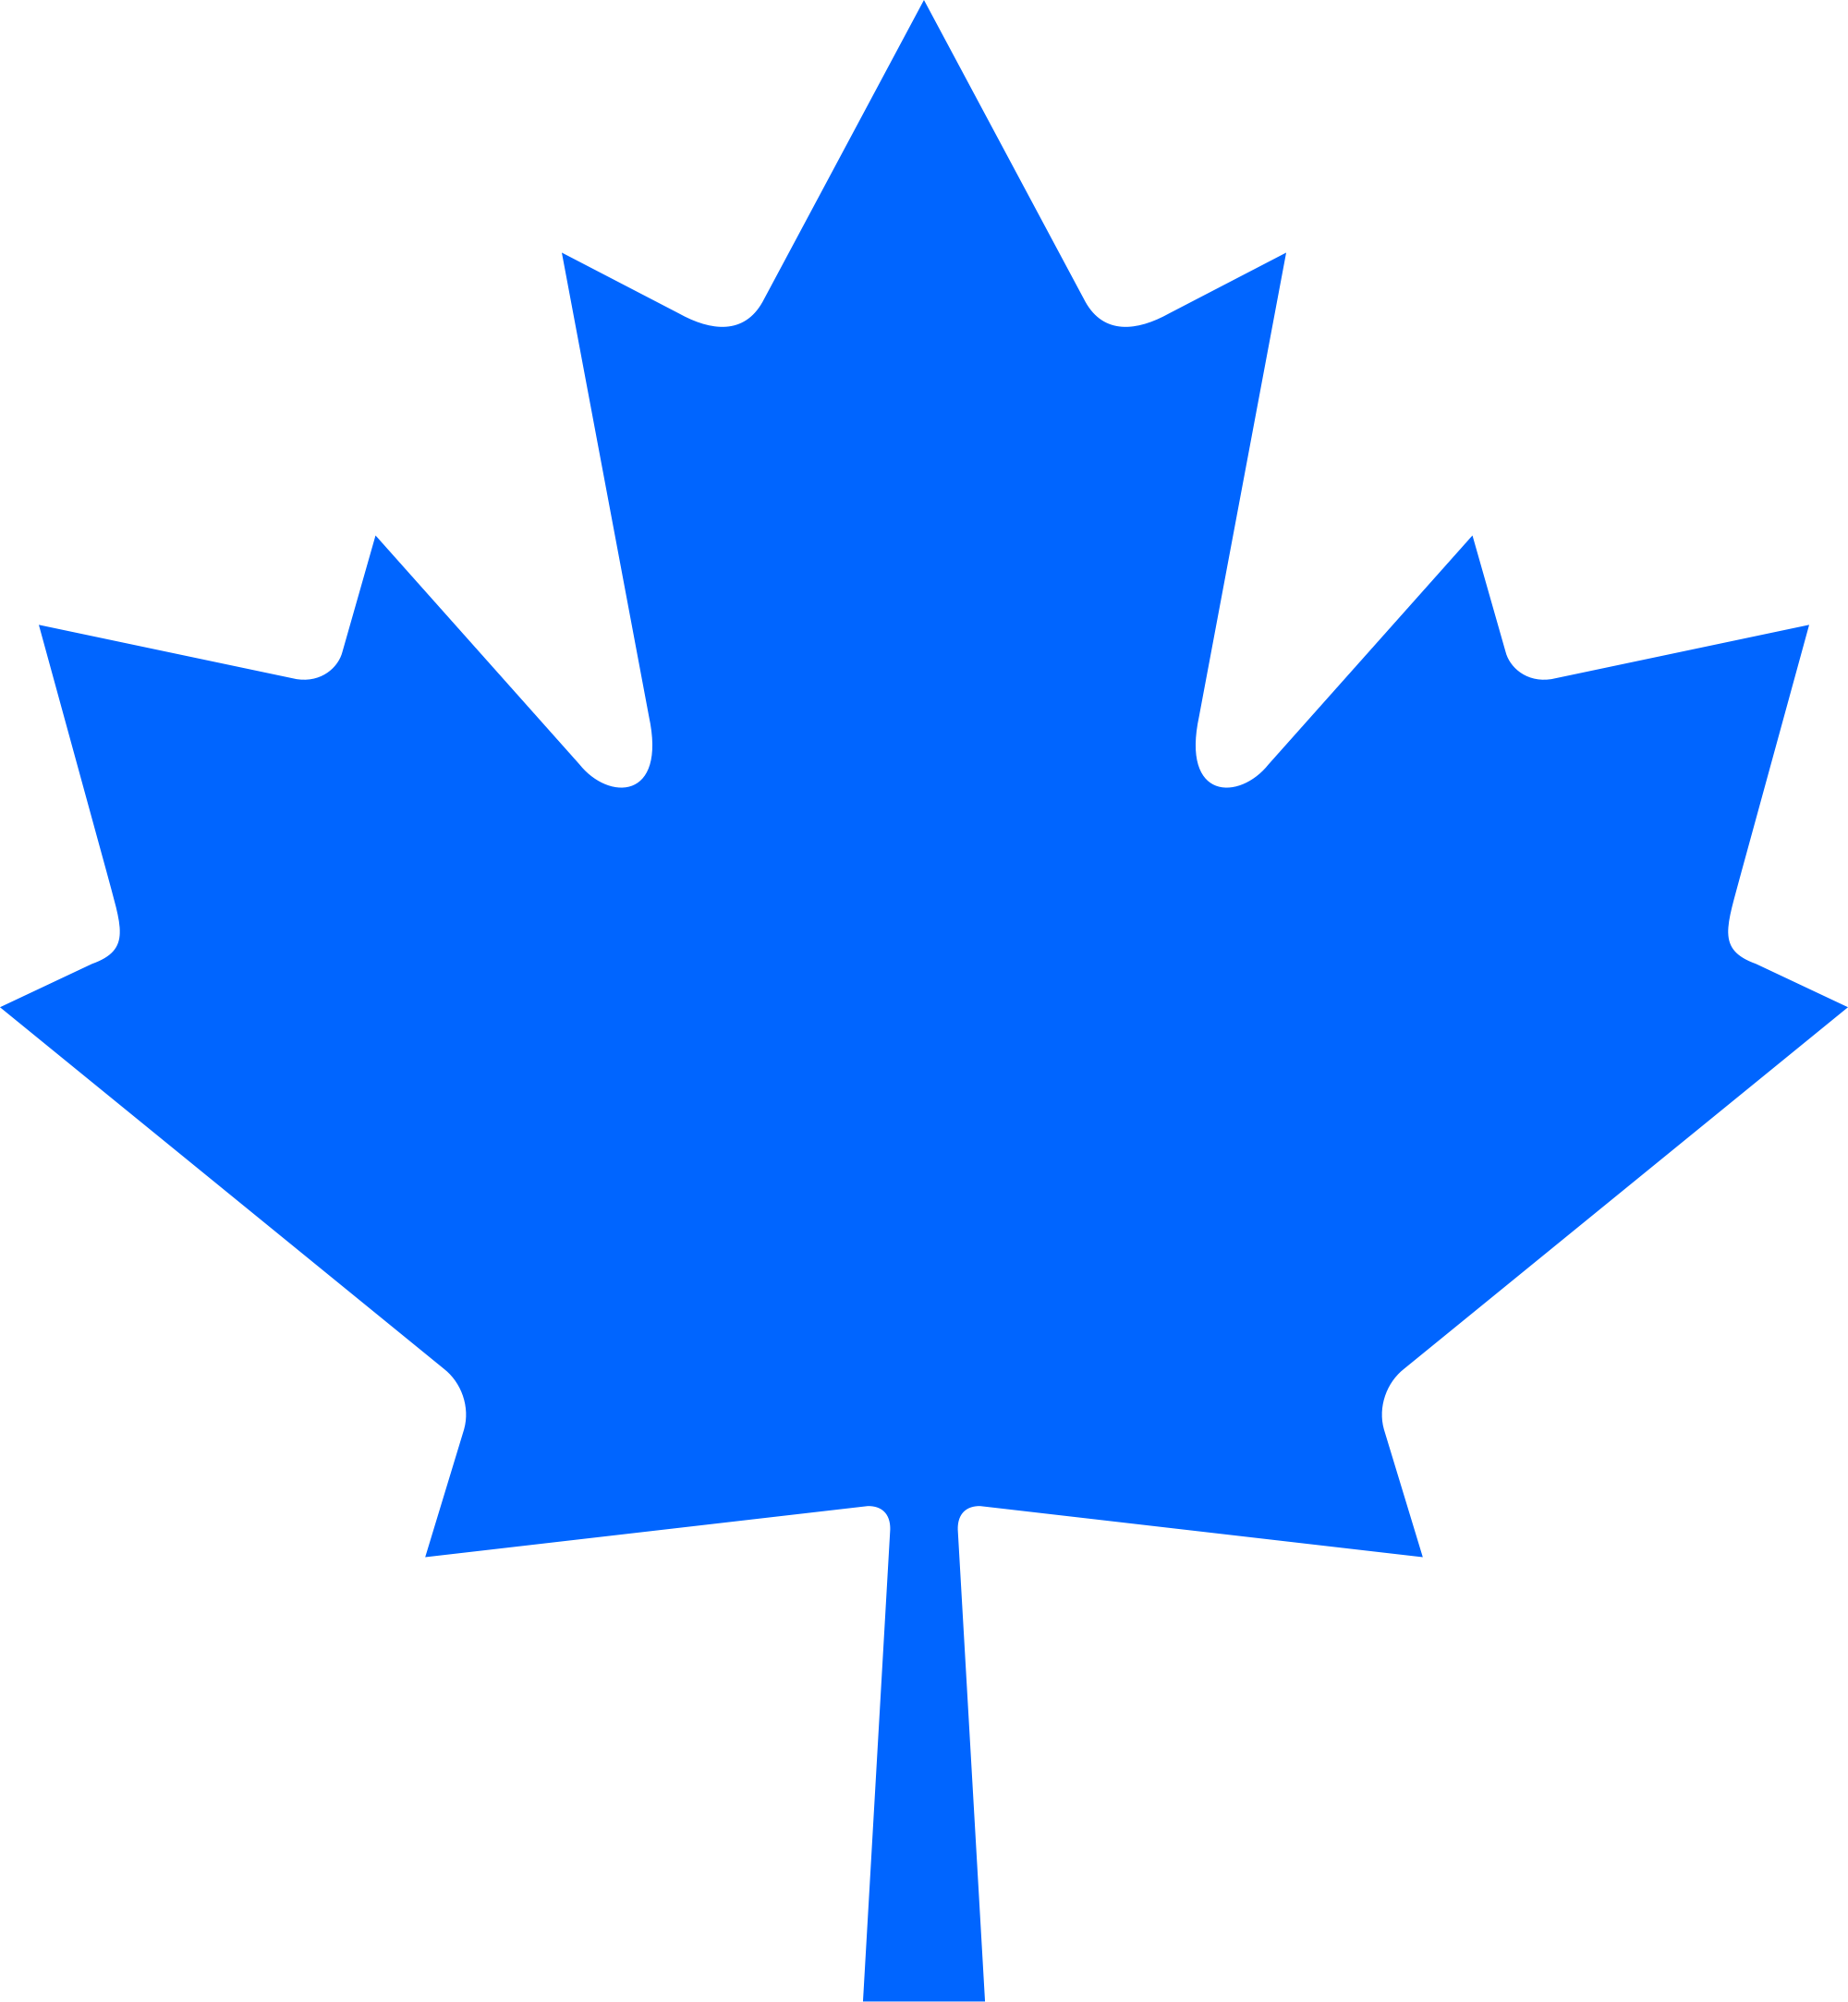 File:Conservative maple leaf, blue.svg